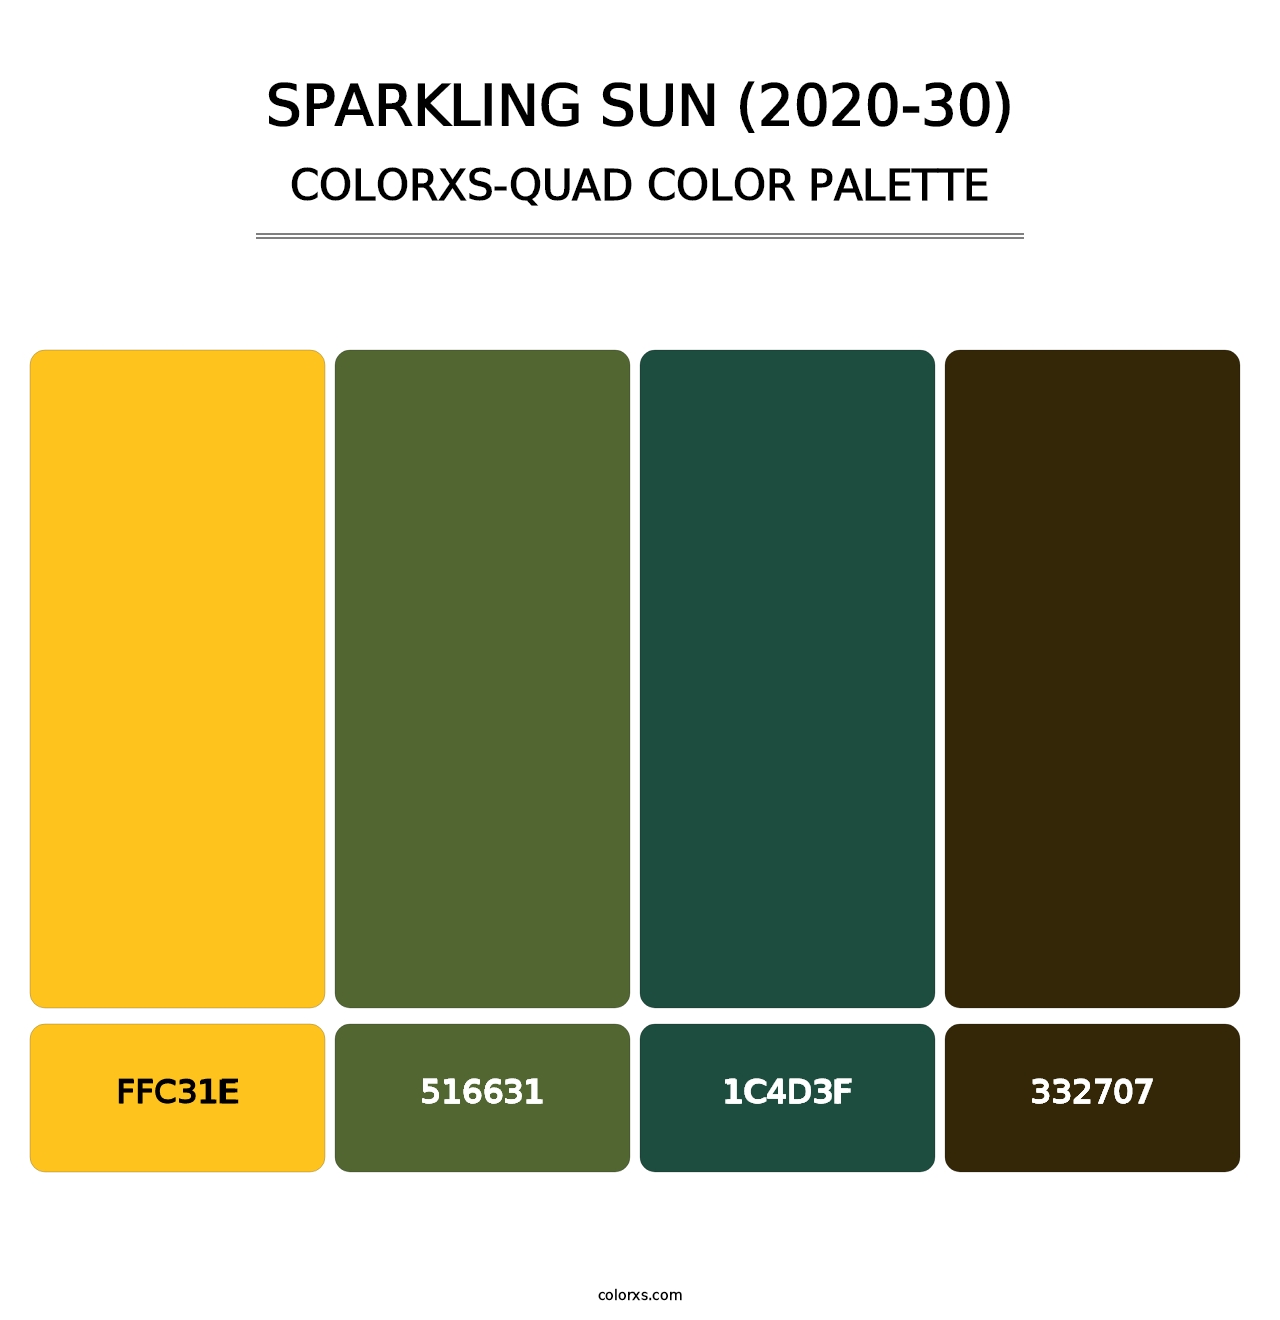 Sparkling Sun (2020-30) - Colorxs Quad Palette